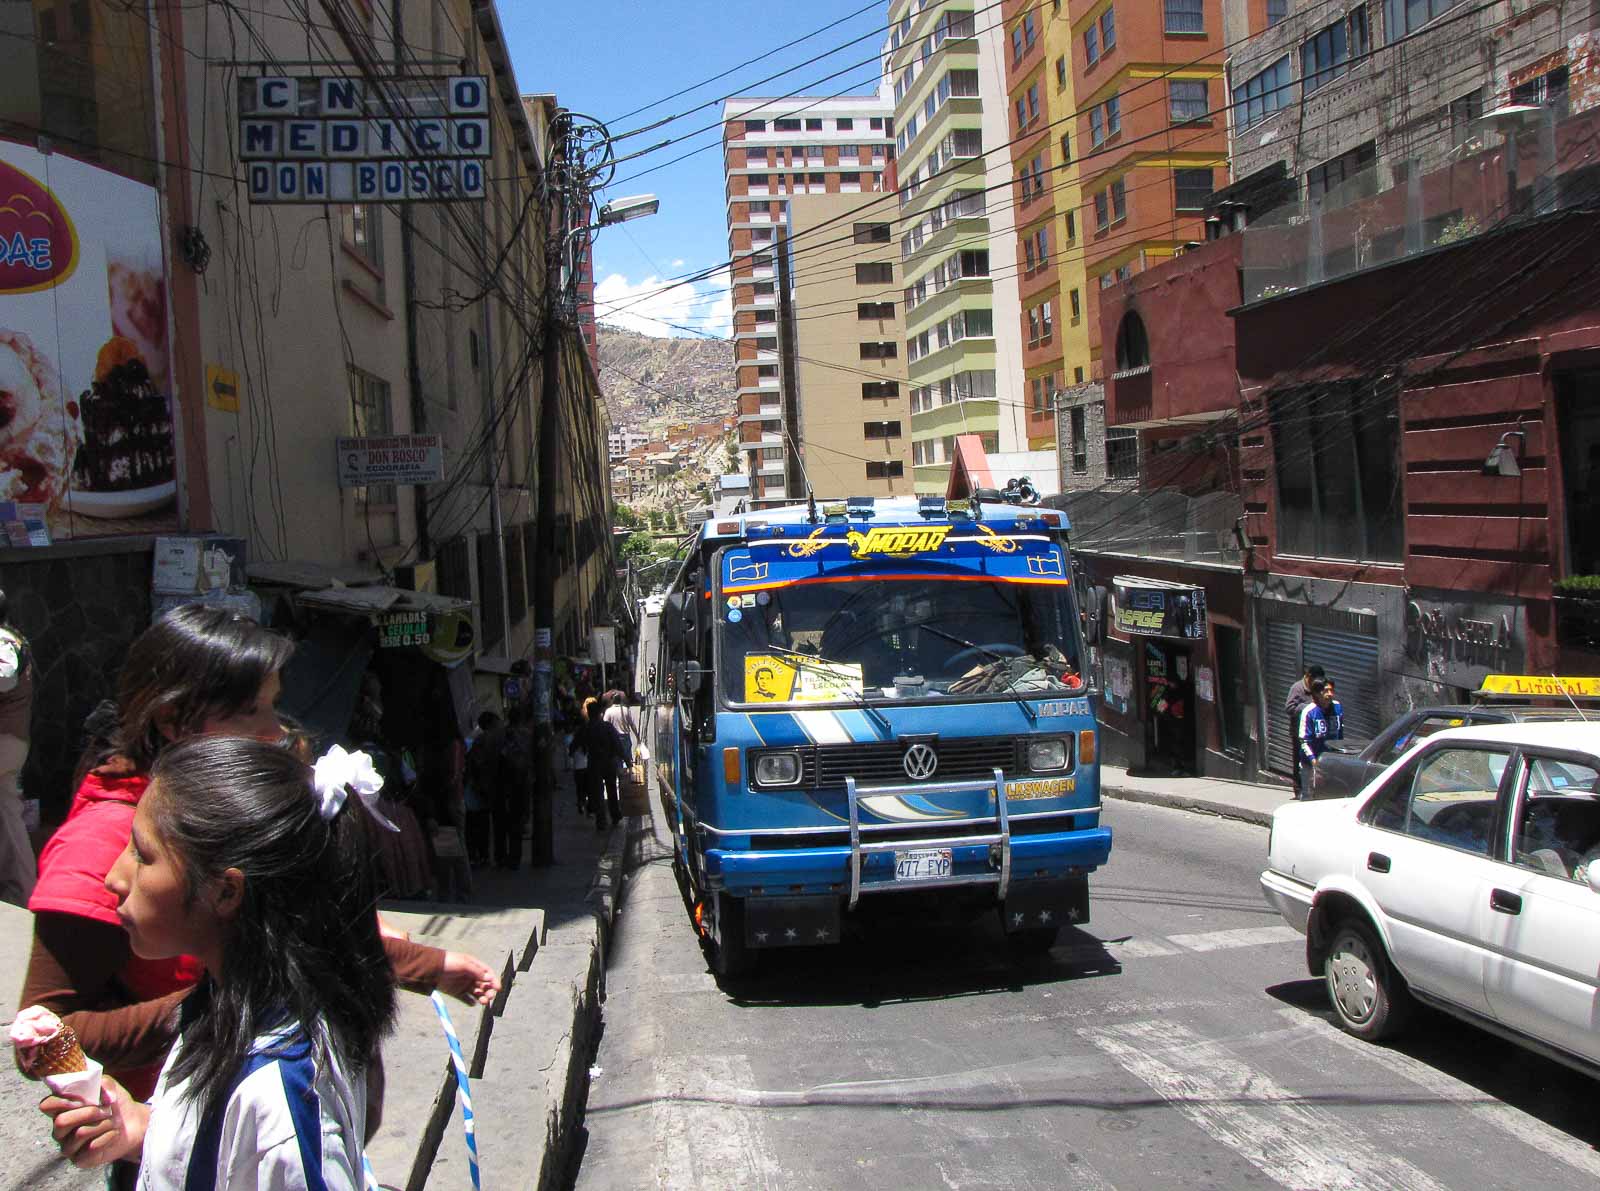 La Paz, Bolivie